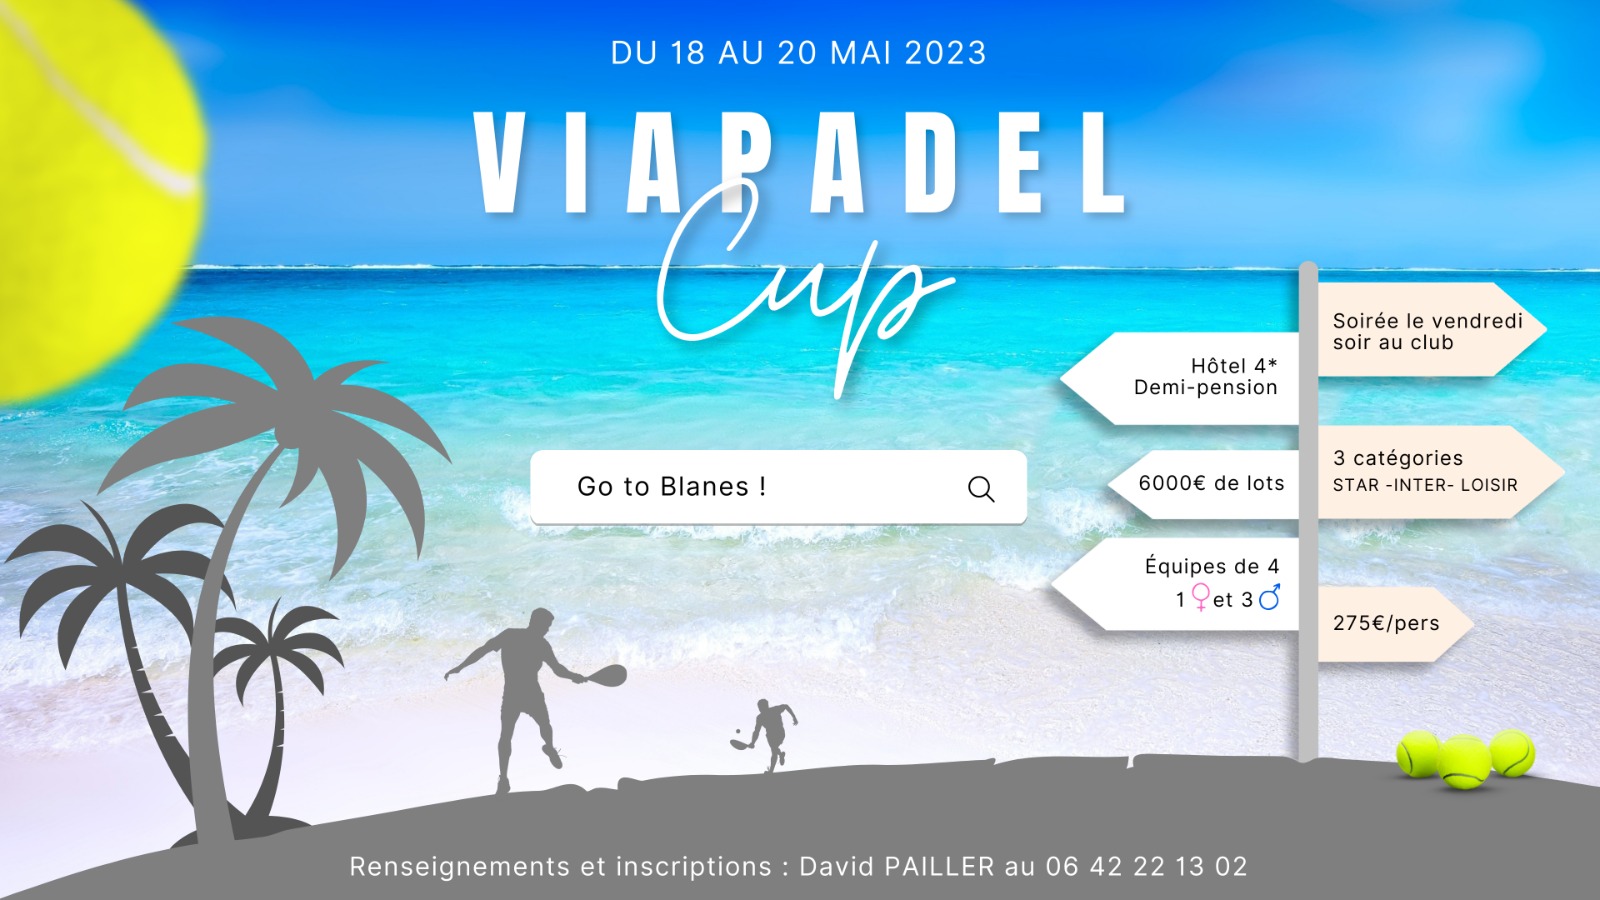 Via Padel Copa 2023: tornem a fer una volta?